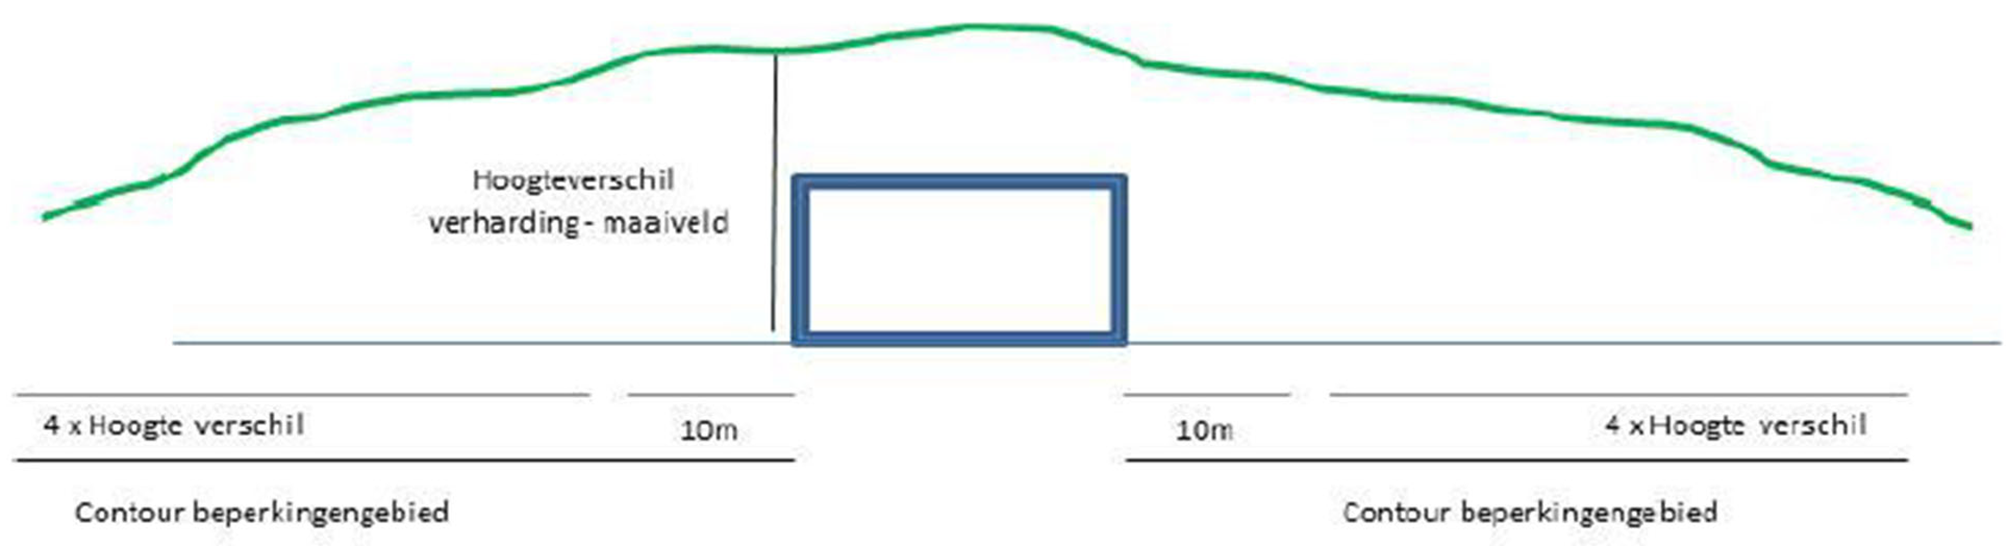 Figuur. Schematische weergave van een weg in een tunnel (handreiking, p. 22)